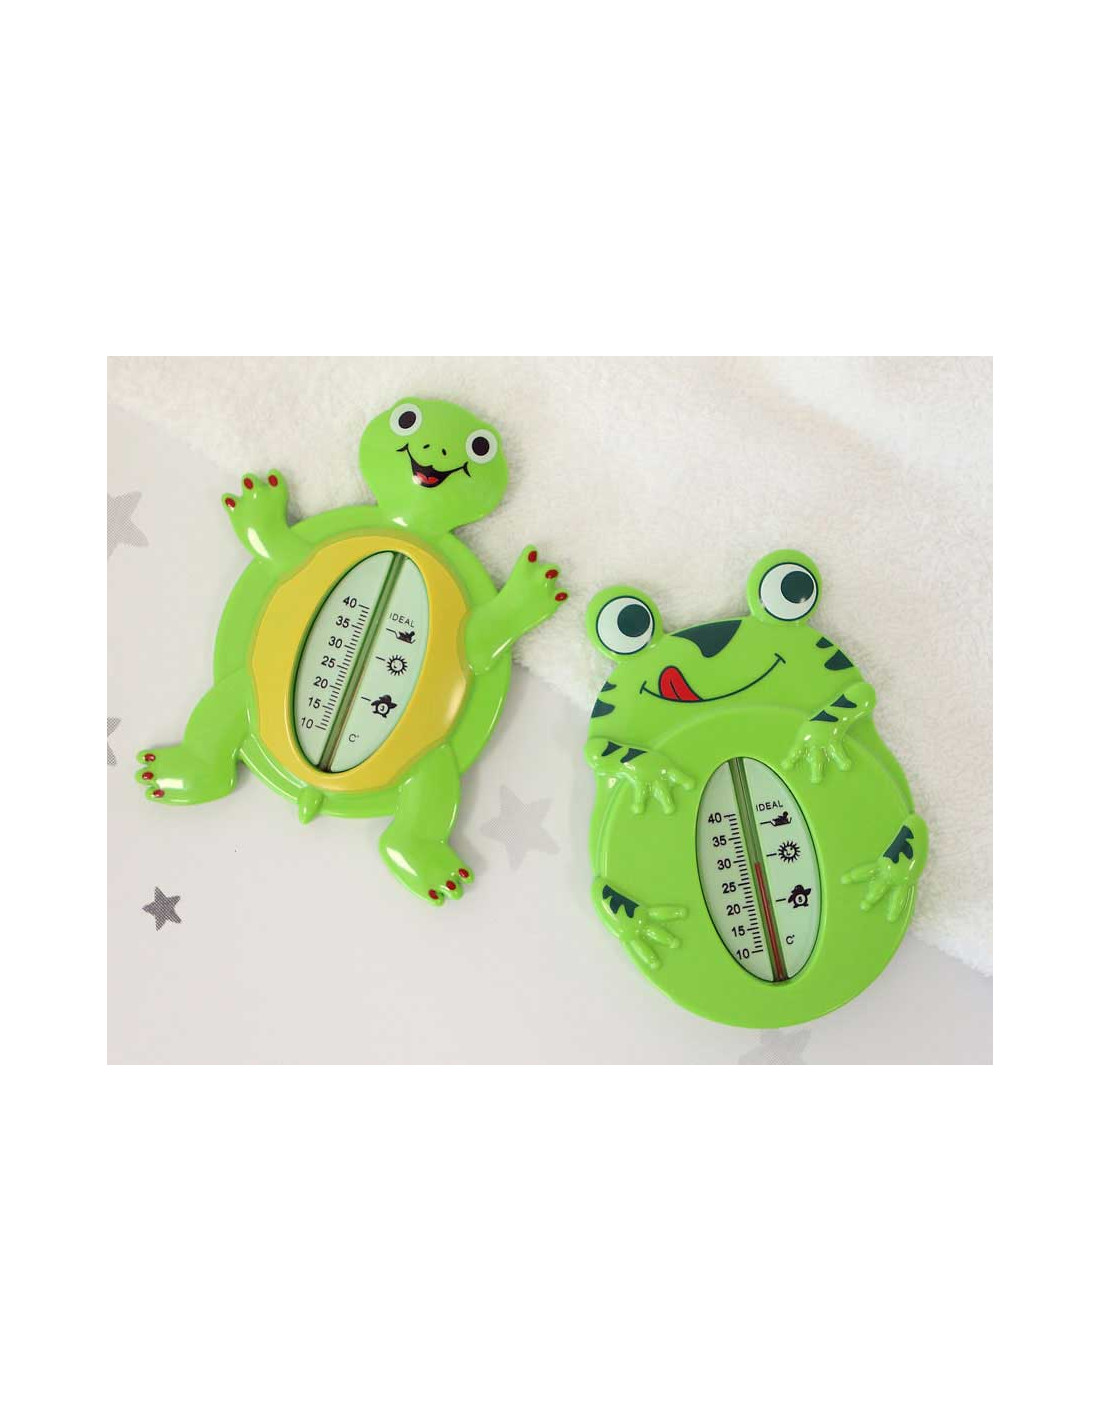 Thermomètre de bain grenouille BEBE CONFORT : Comparateur, Avis, Prix